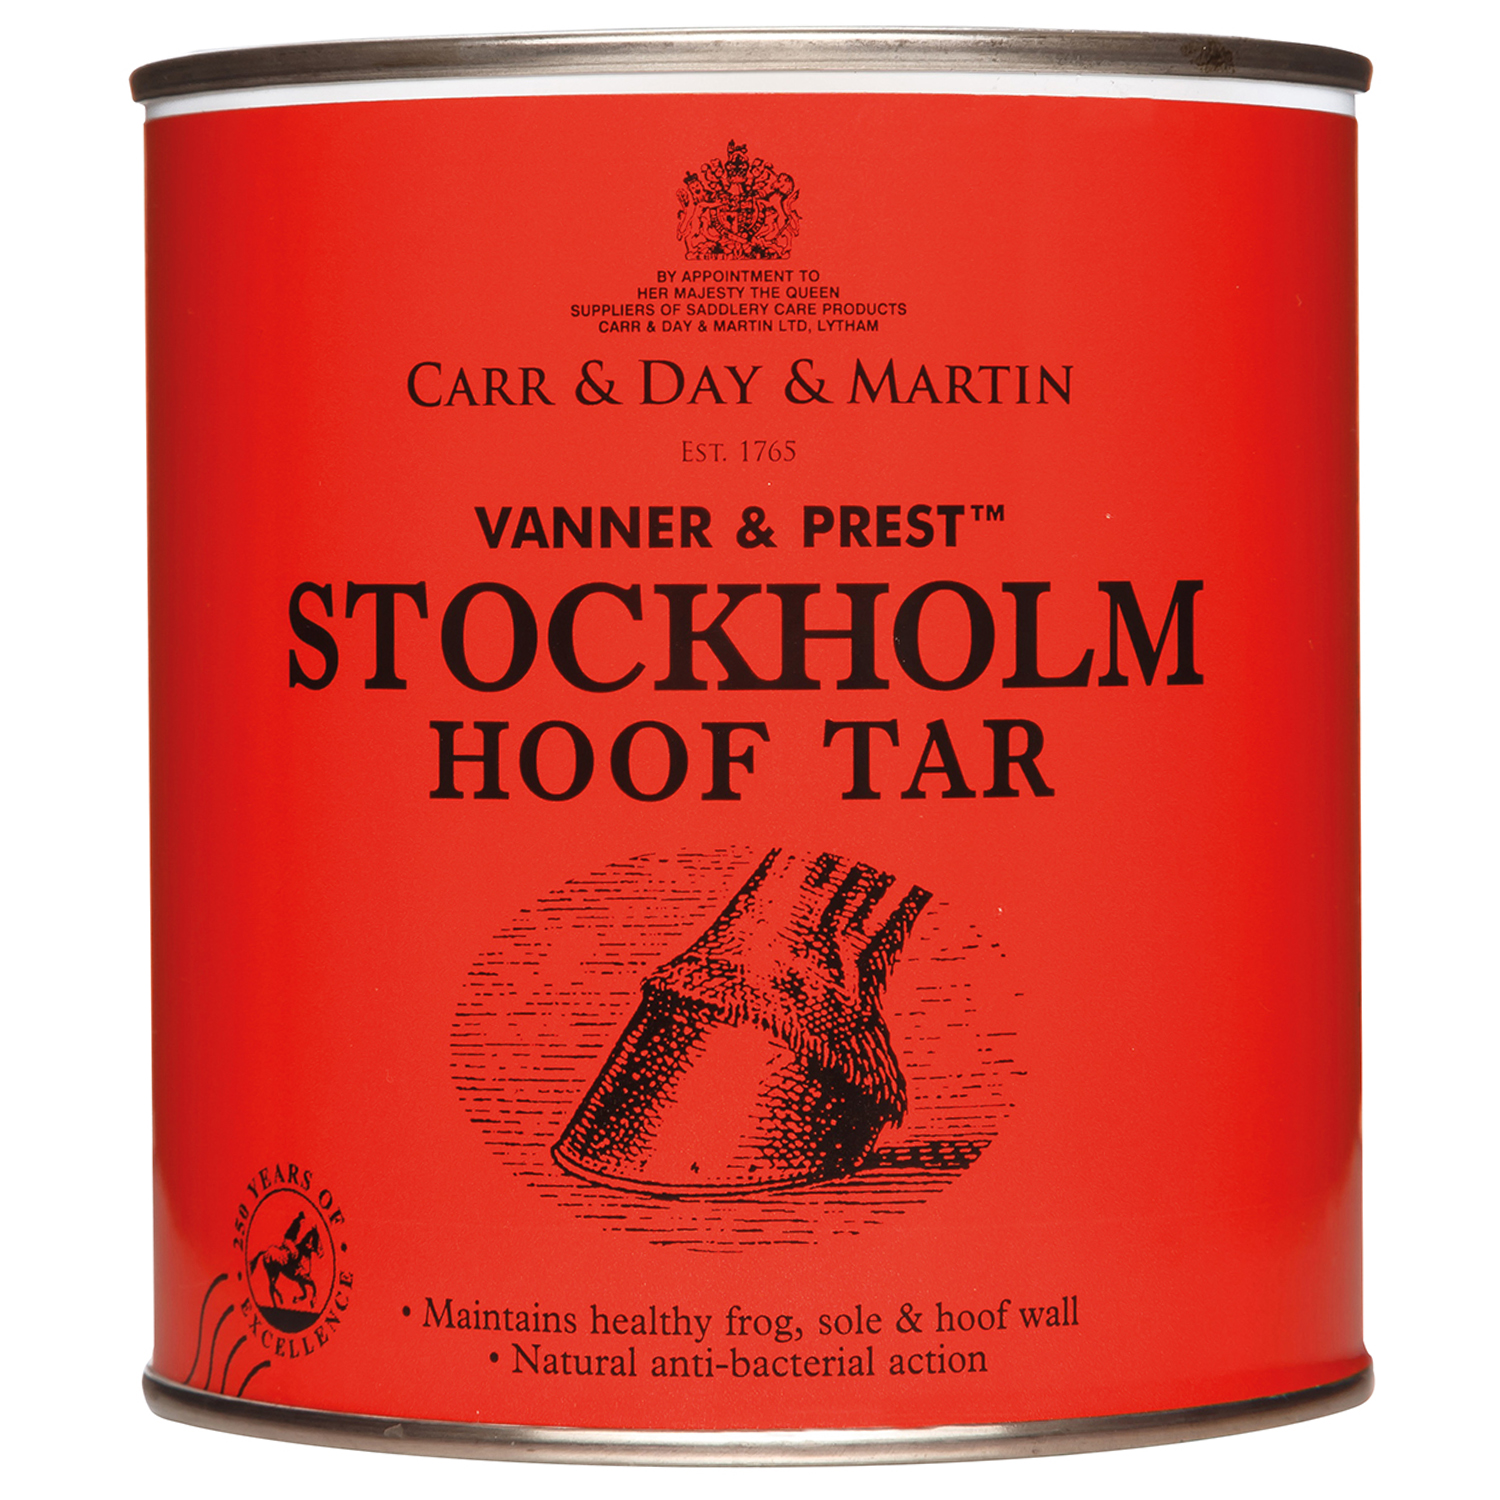 CARR & DAY & MARTIN VANNER & PREST STOCKHOLM HOOF TAR 455 ML 455 ML